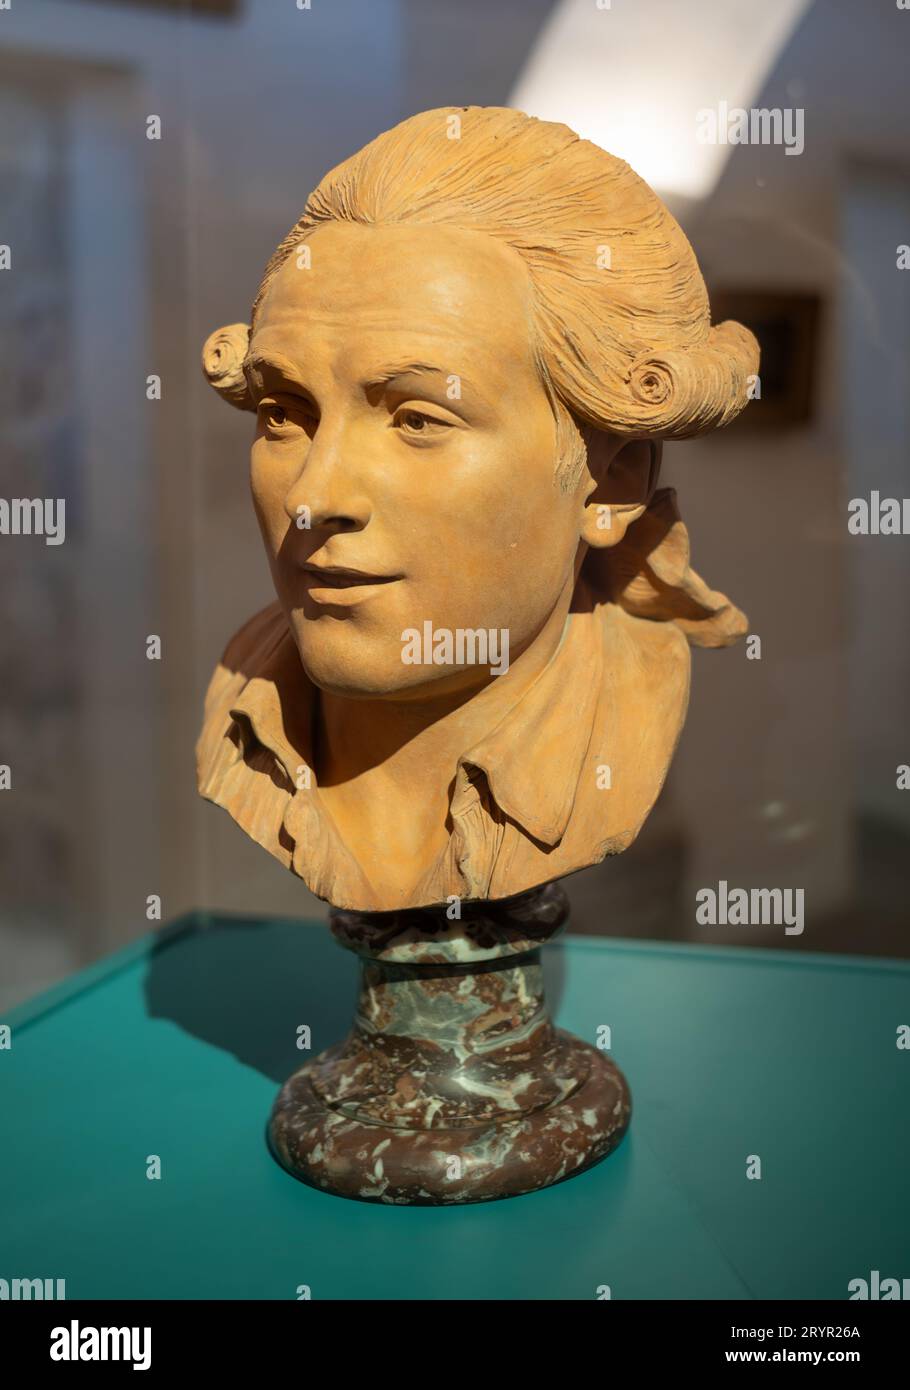 Un buste en terre cuite du révolutionnaire français Augustin Robespierre, par le sculpteur Claude André Deseine en 1791, Musée de la Révolution française, Vizille, FR Banque D'Images